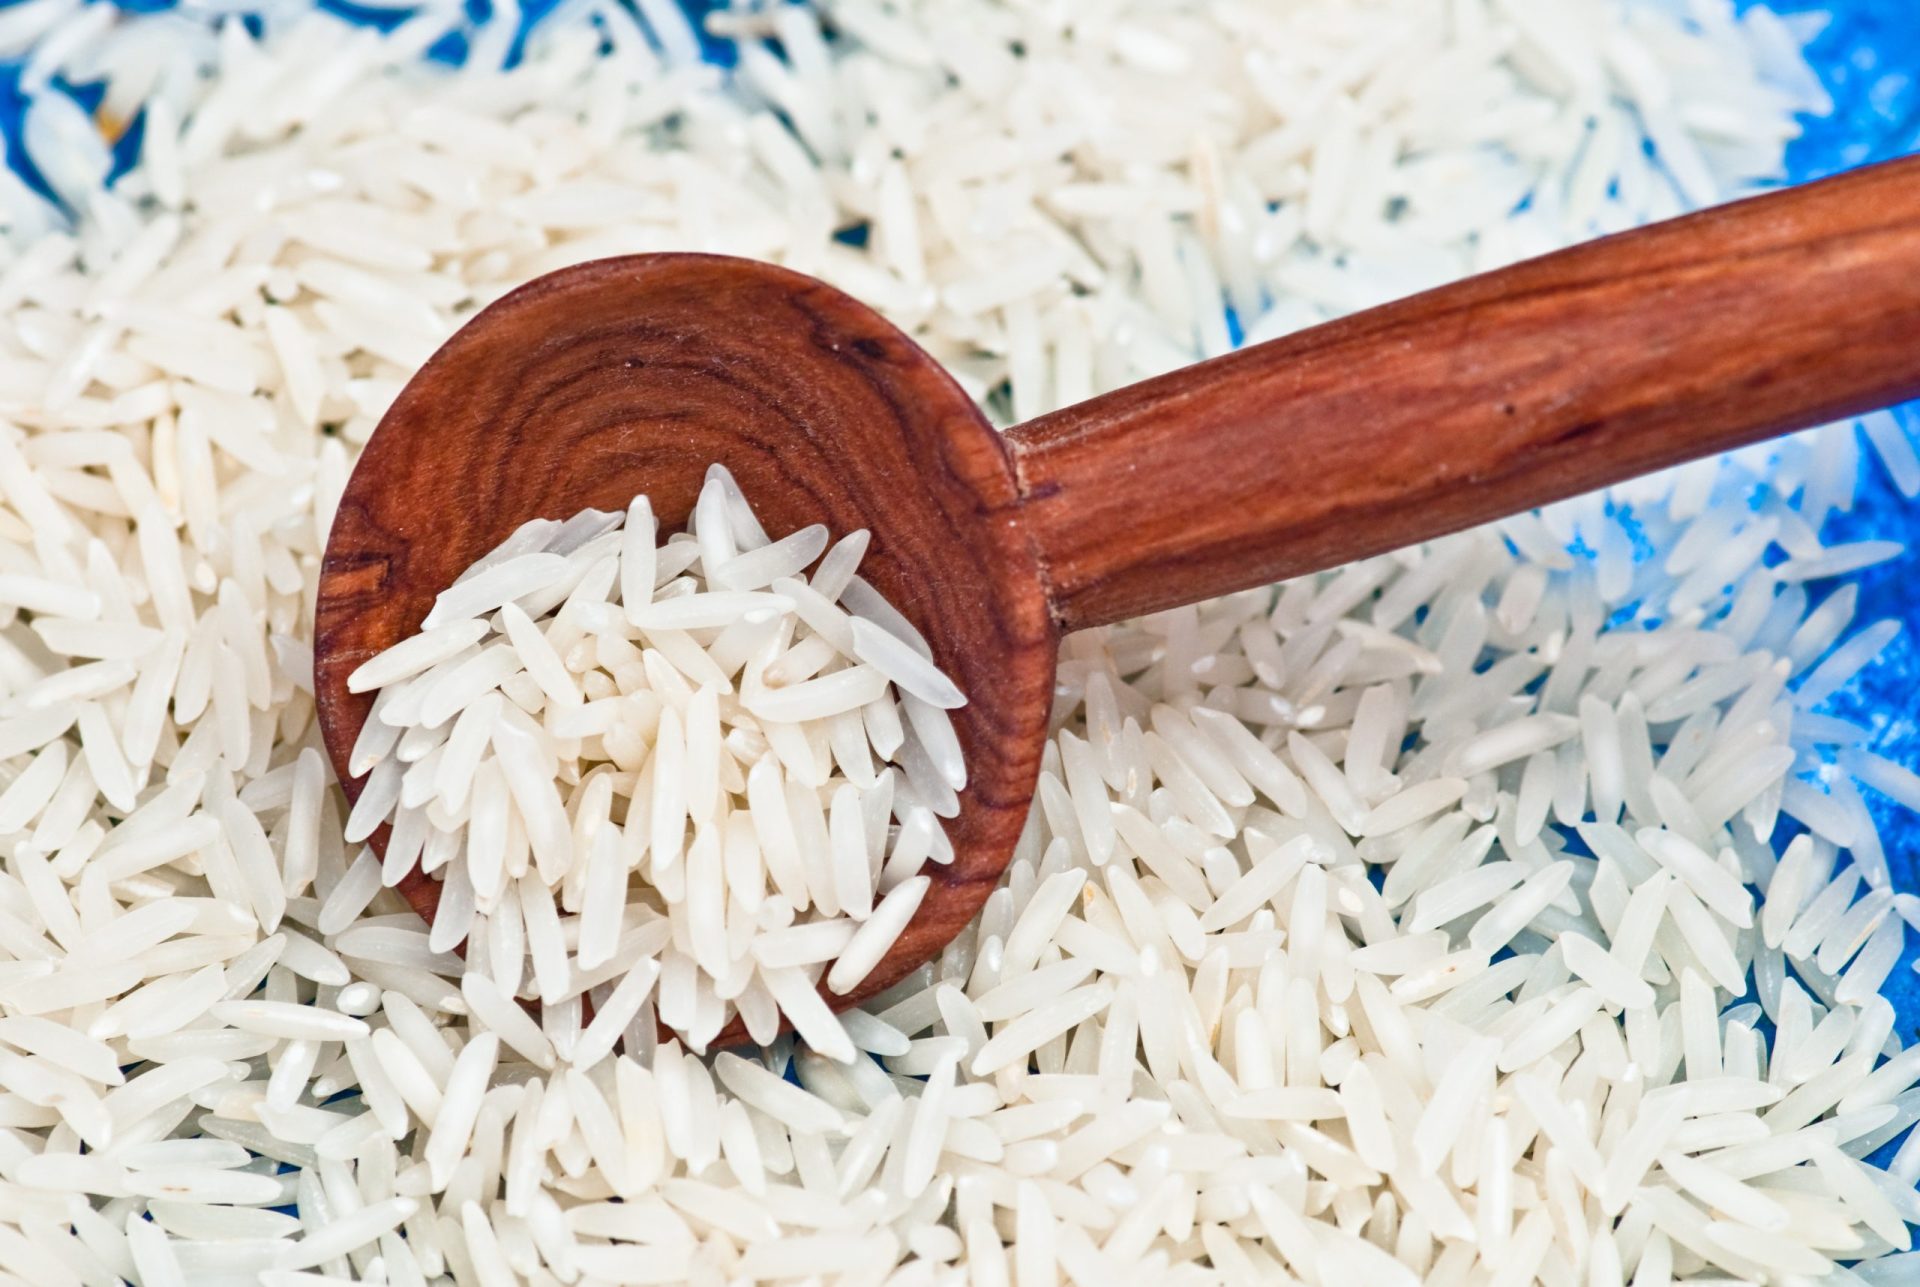 Portugueses comem em média 16 kg de arroz branco por ano